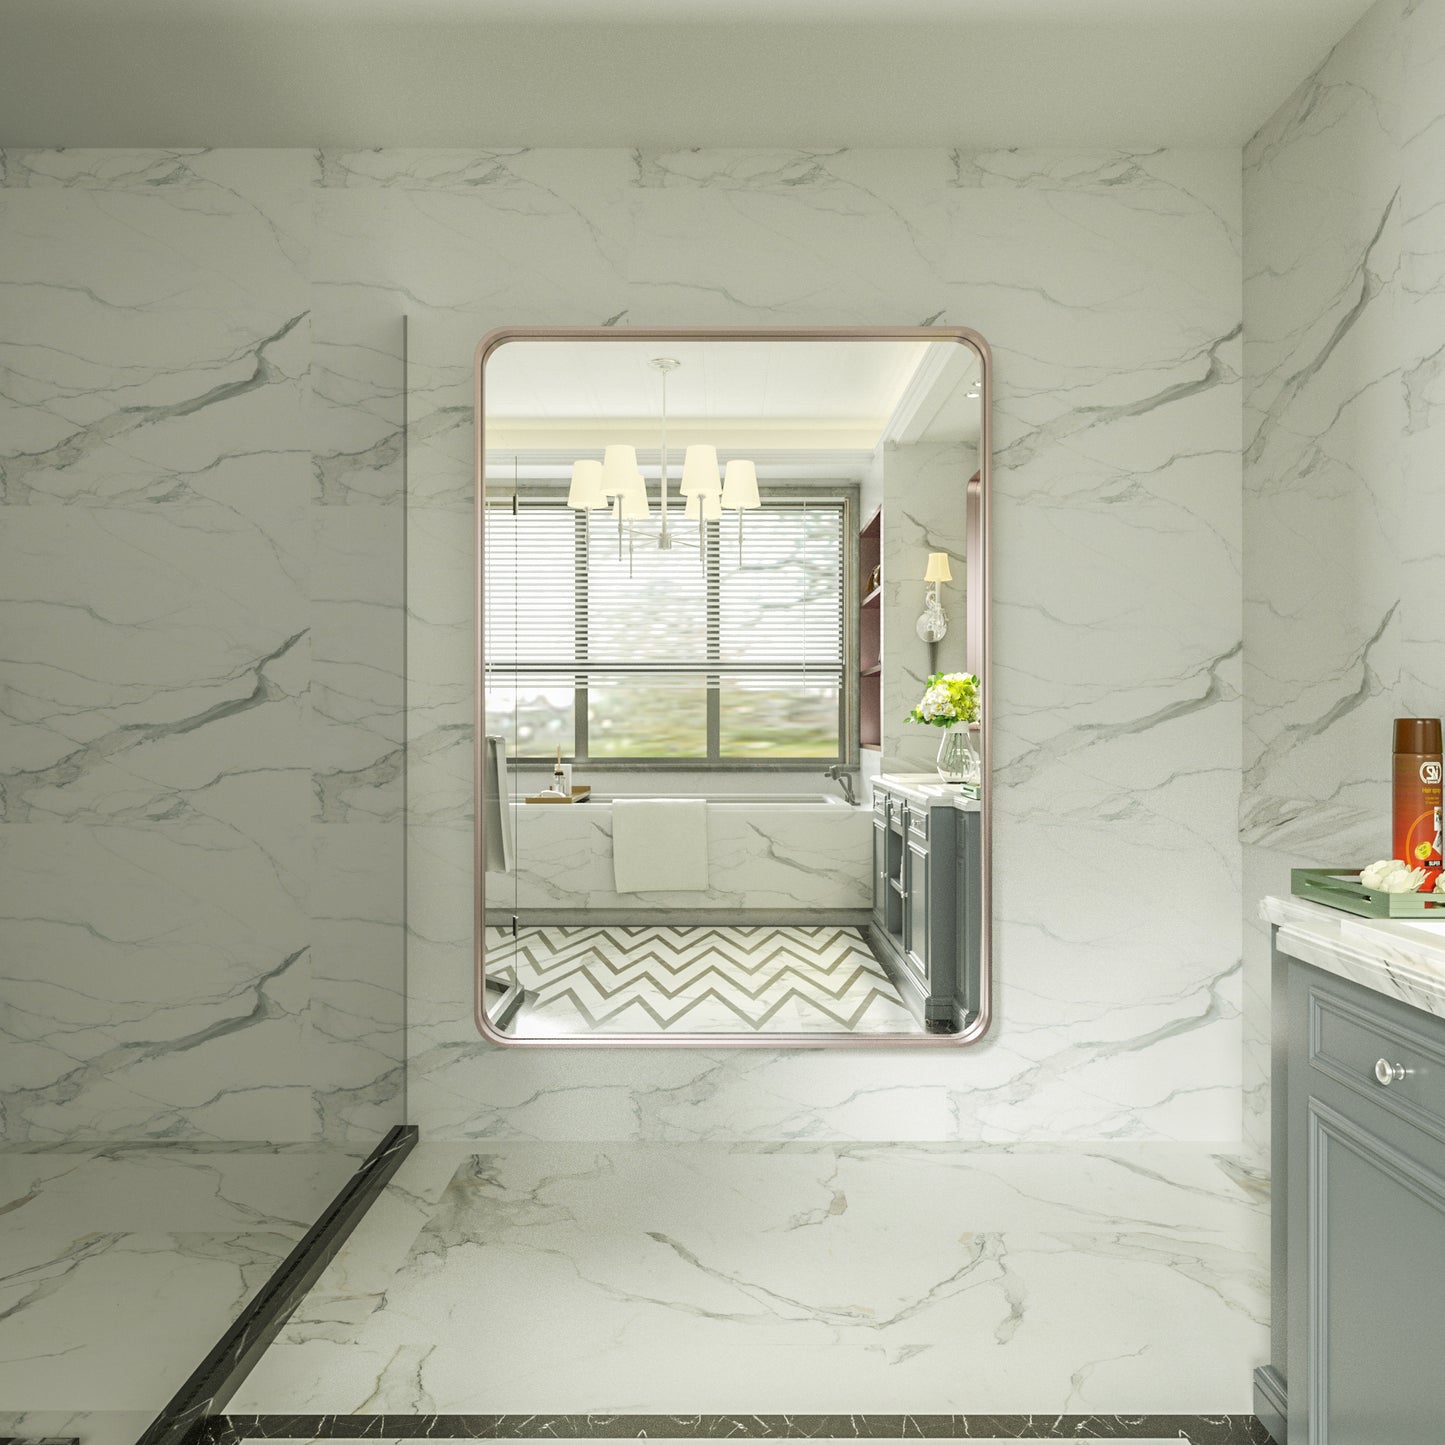 
                  
                    48" x 36" PILOCOS Miroir de salle de bain rectangulaire chic et moderne avec cadre en aluminium à texture nervurée
                  
                